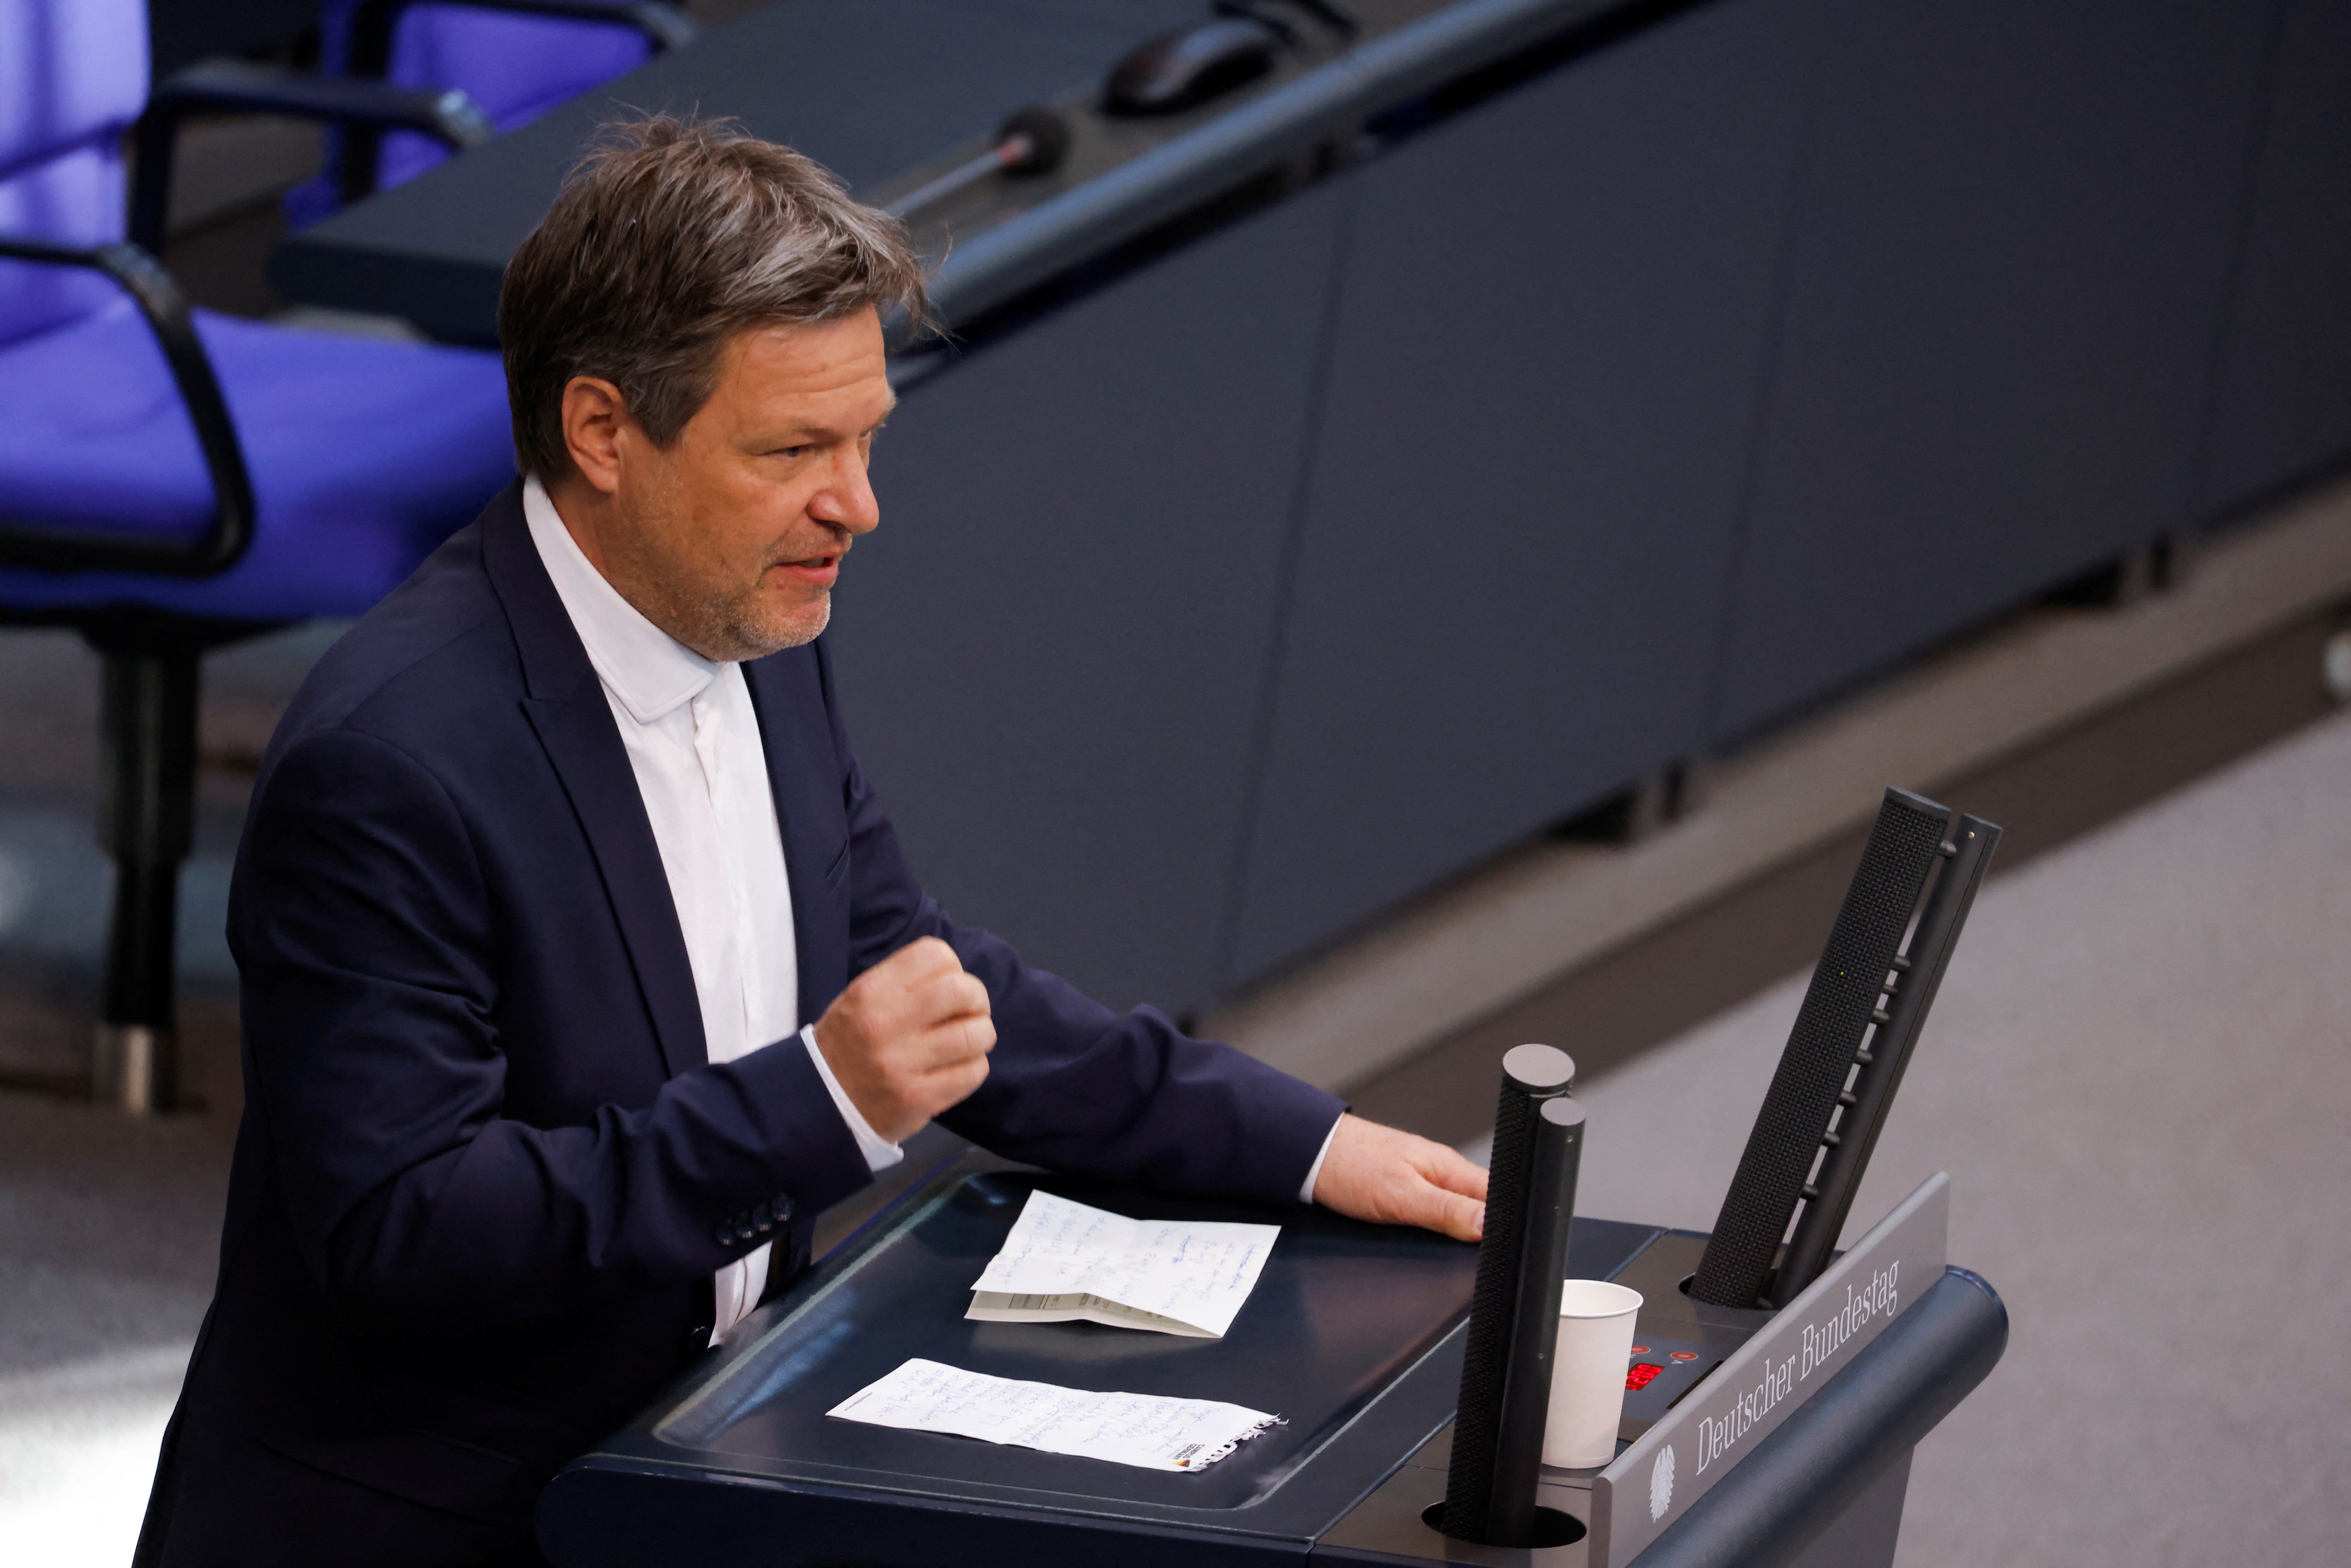 Debate on budget in Germany's Bundestag in Berlin